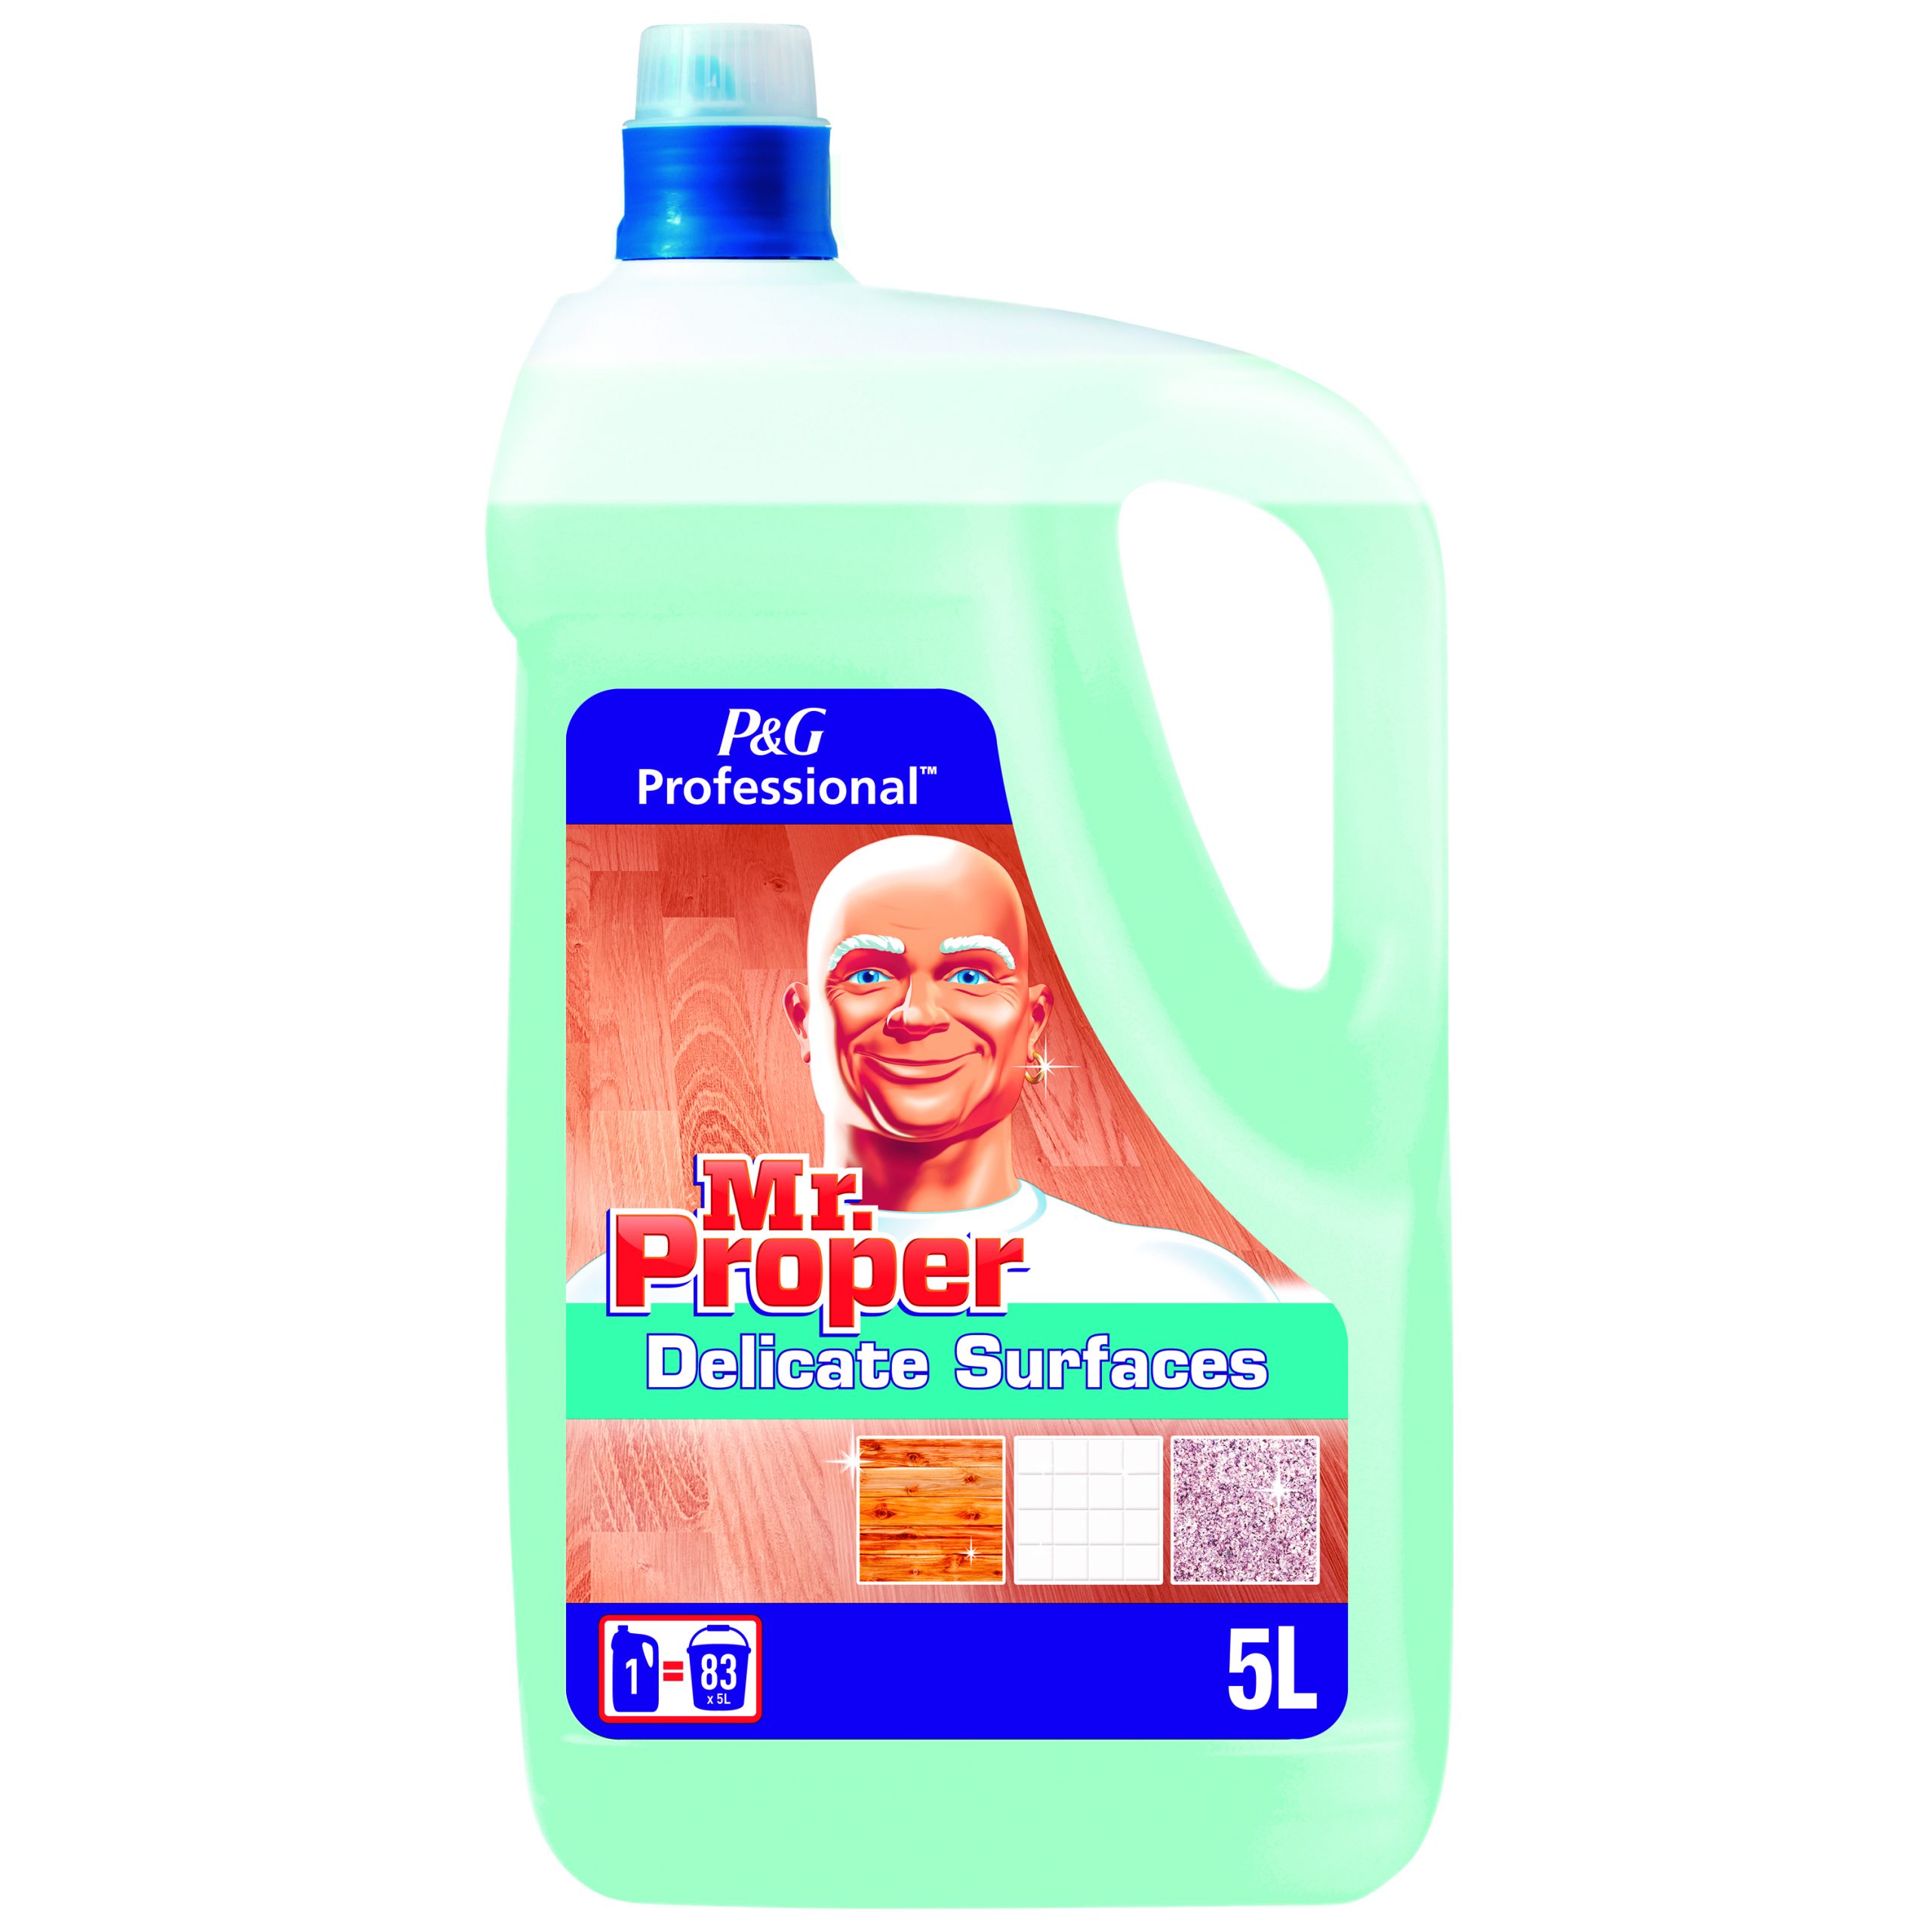 Don limpio pH neutro limpiador del hogar y superficies delicadas.